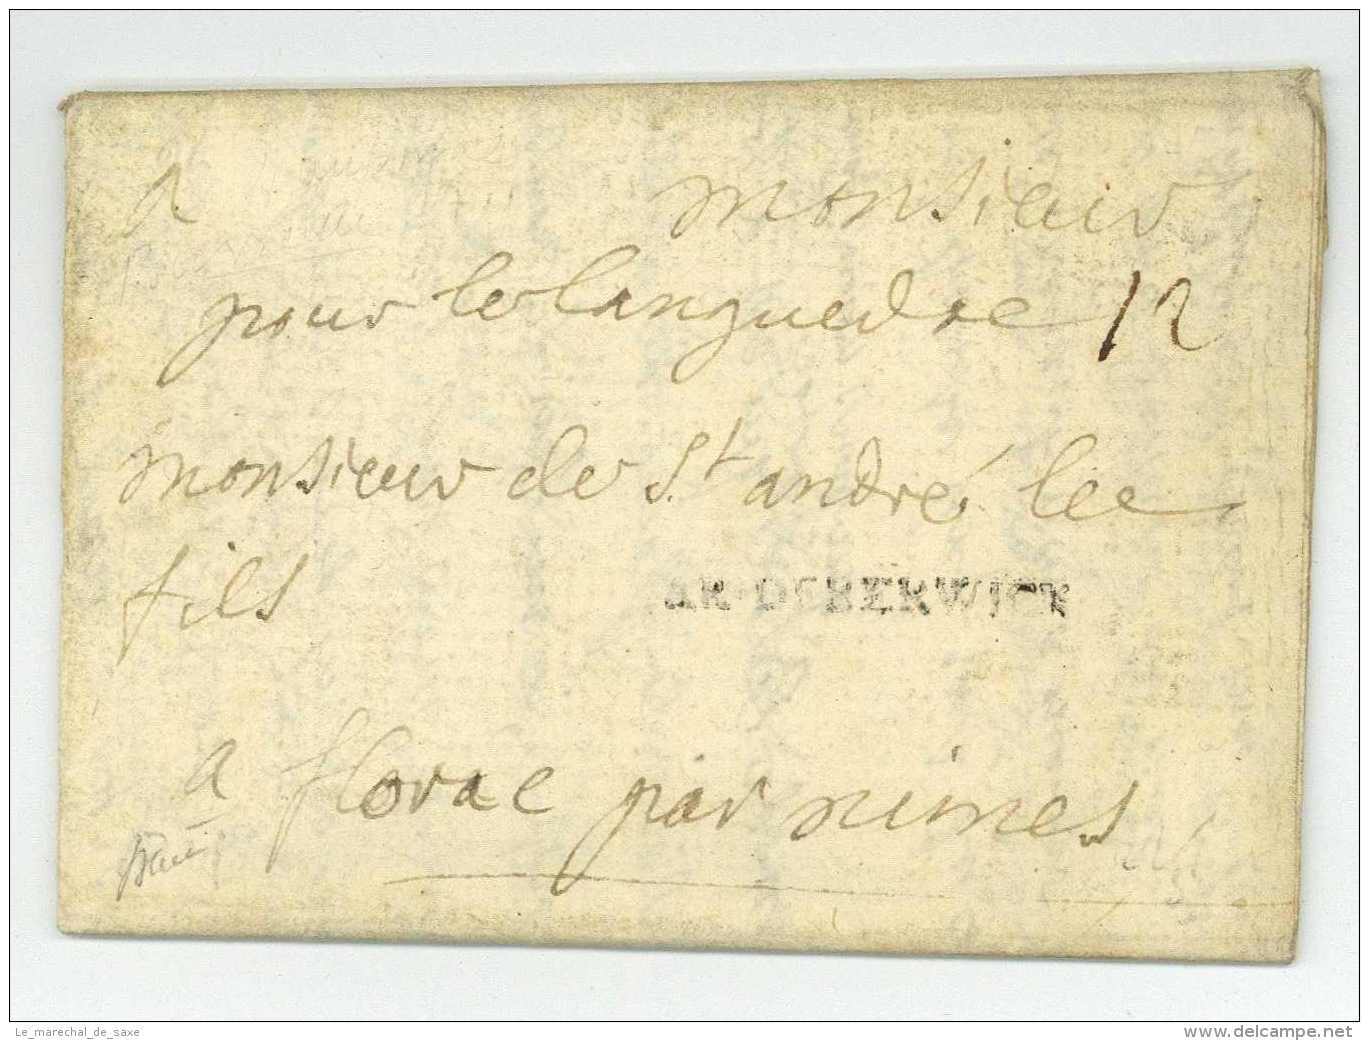 GUERRE DE LA SUCCESSION D&rsquo;ESPAGNE &ndash; ARMEE DE BERWICK &ndash; Granvielle BARRAUX 1711 Montmelian - Army Postmarks (before 1900)